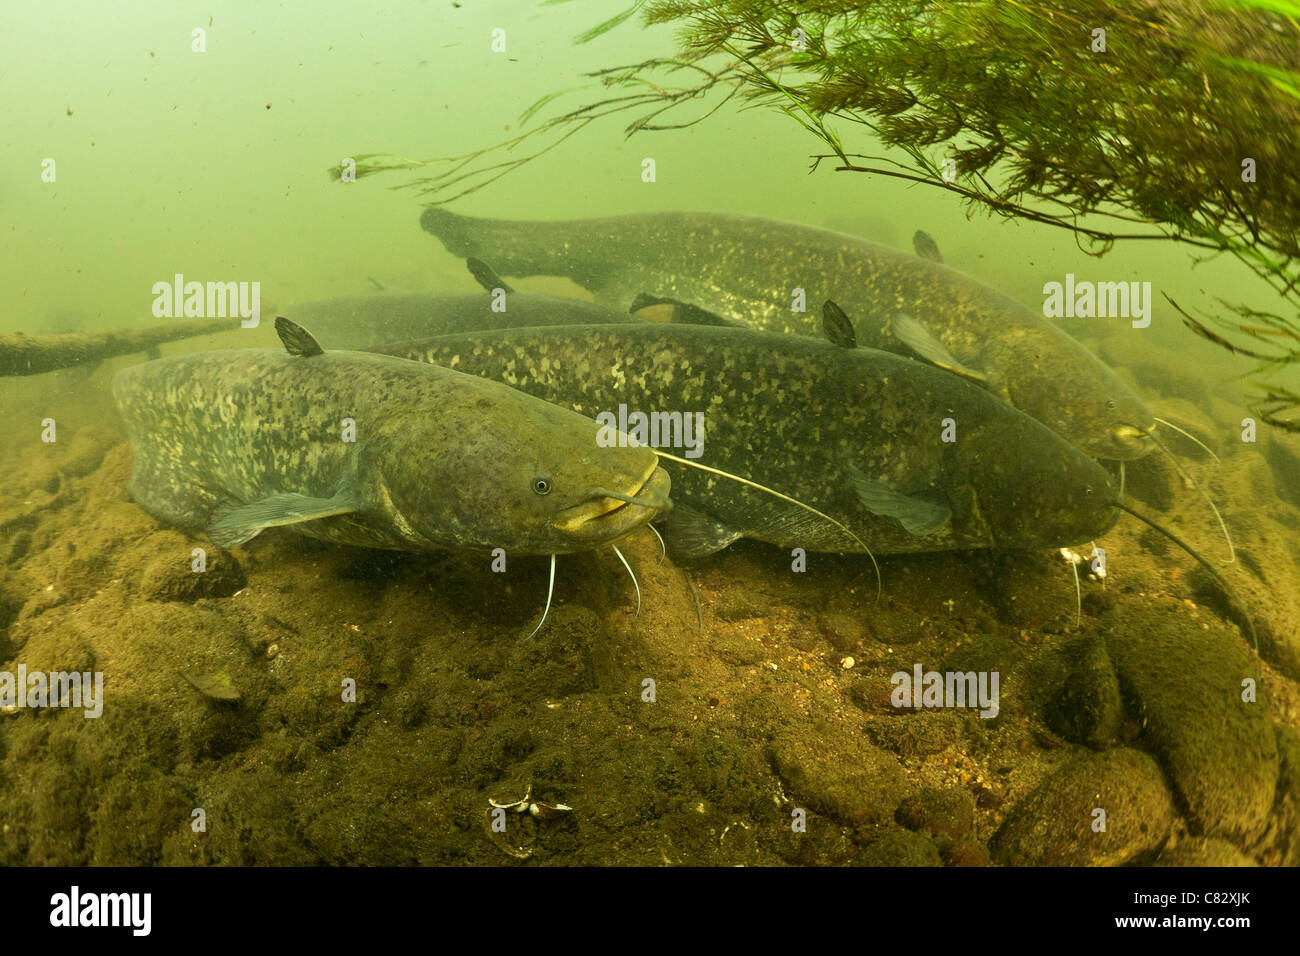 Silure (Silurus glanis) dans leur milieu naturel (France). Appelé aussi Sheatfish, ils obtiennent des moustaches de barbillons. Banque D'Images